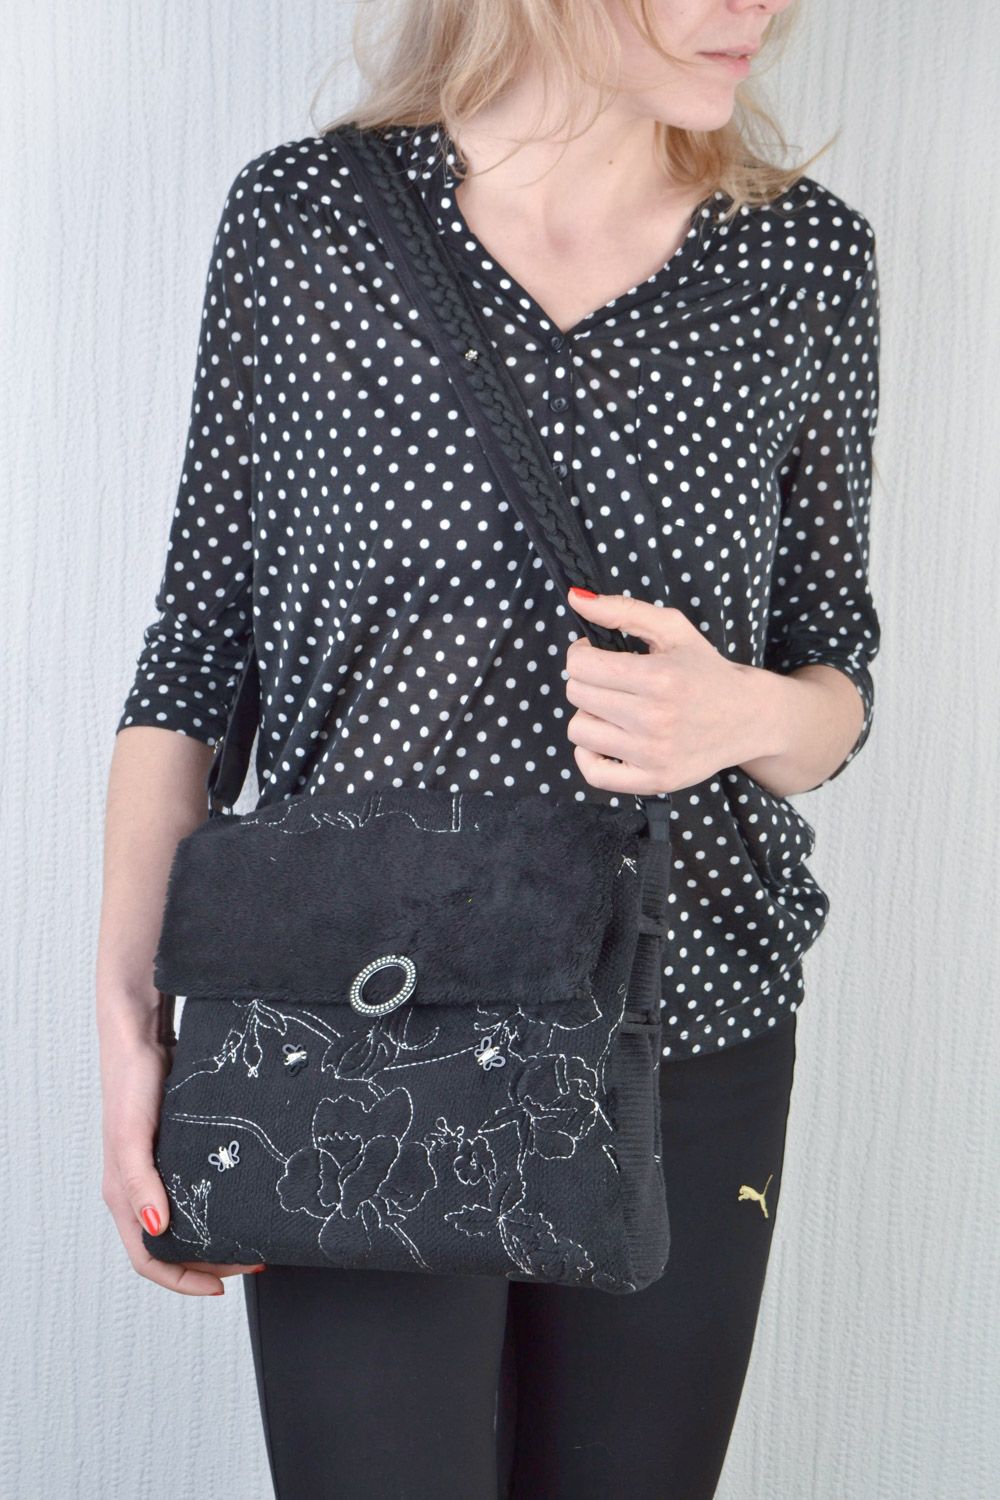 Sac à main en laine et acrylique carré noir accessoire stylé pour femme photo 1